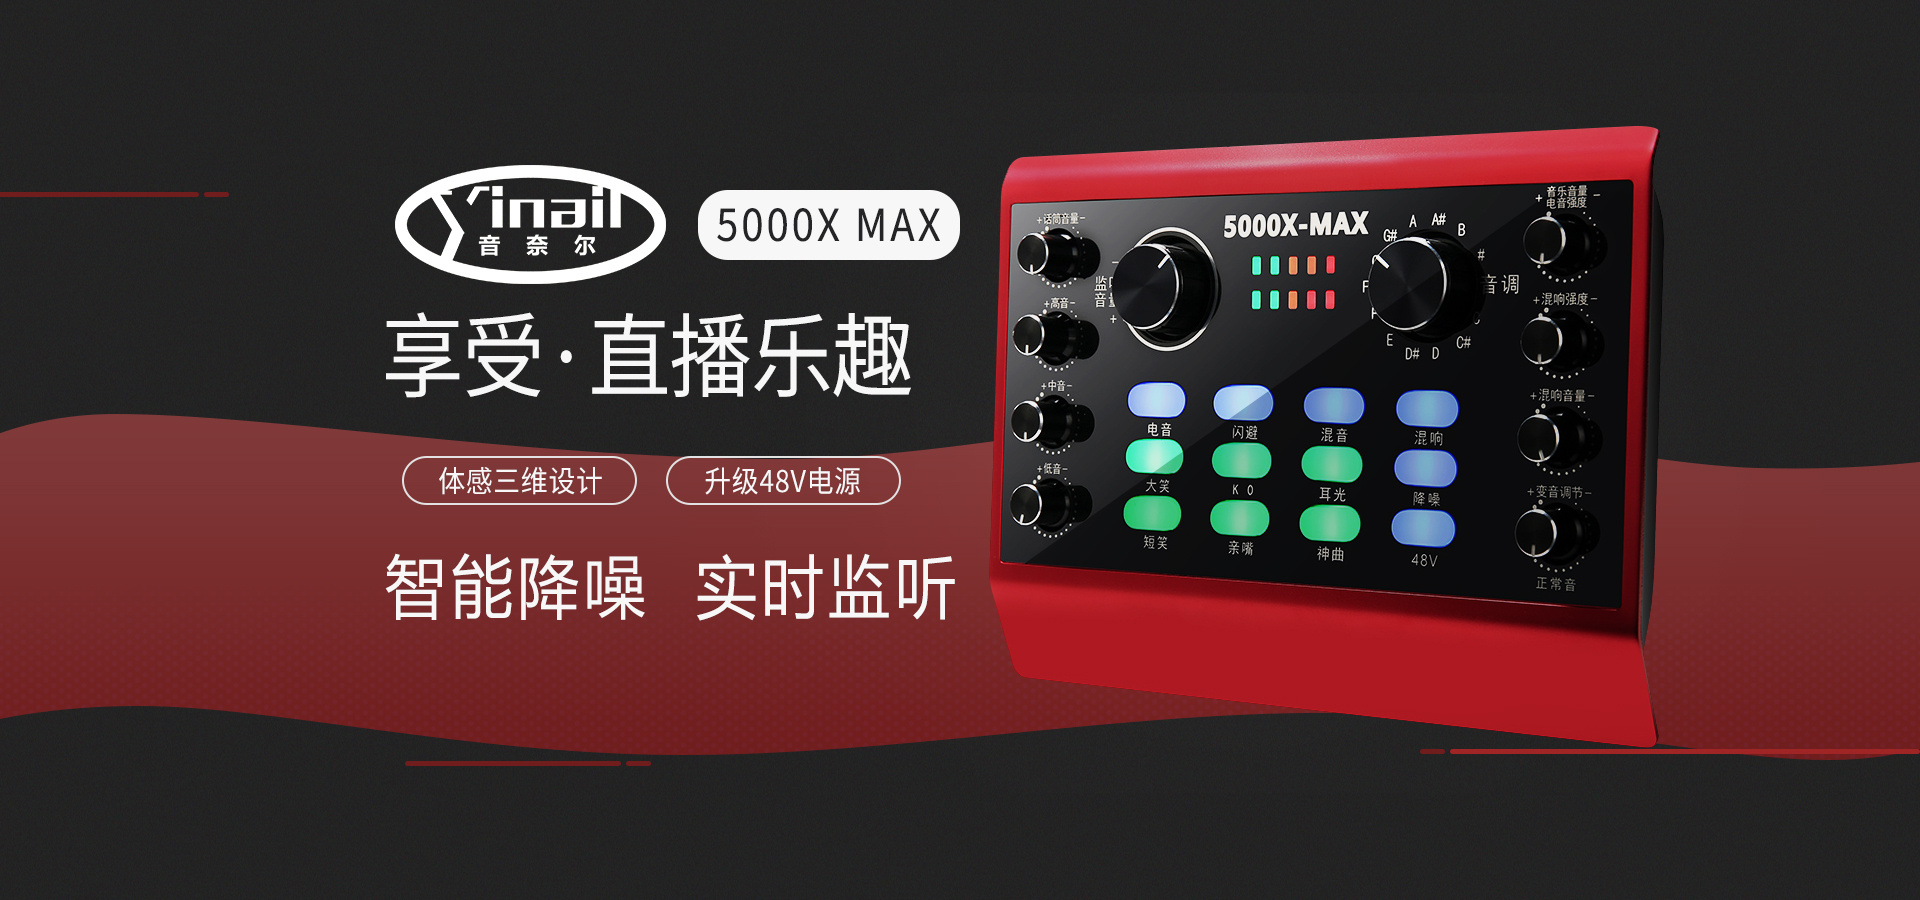 音奈尔5000X MAX